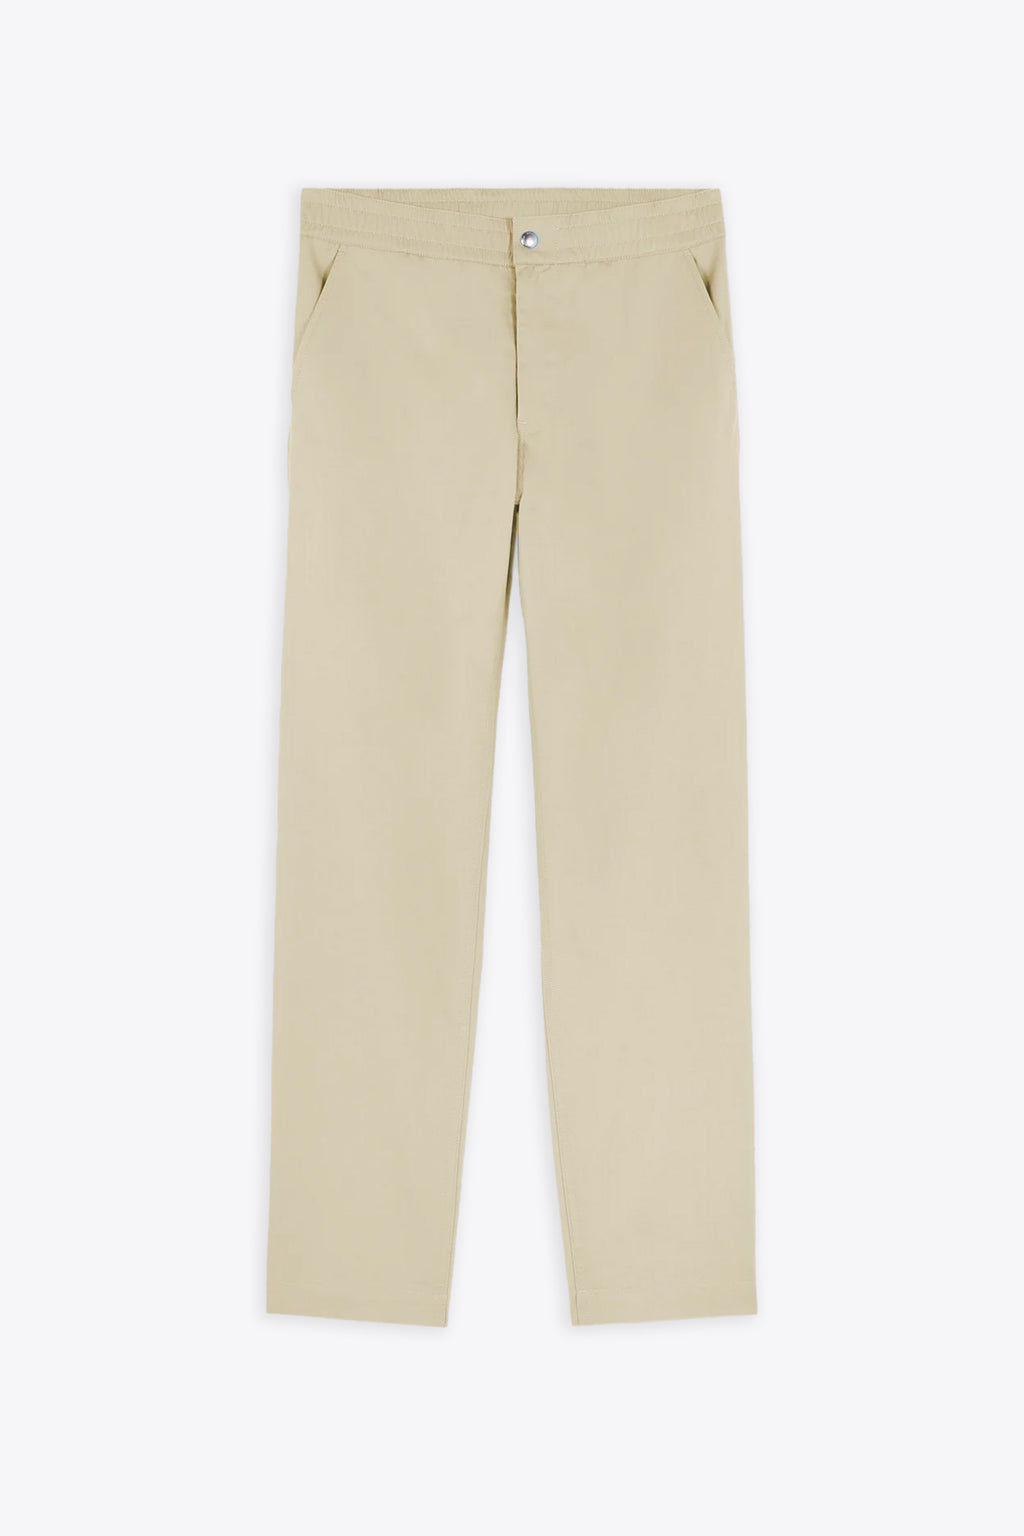 alt-image__Pantalone-in-cotone-beige-chiaro-con-elastico-in-vita---Casual-Pants